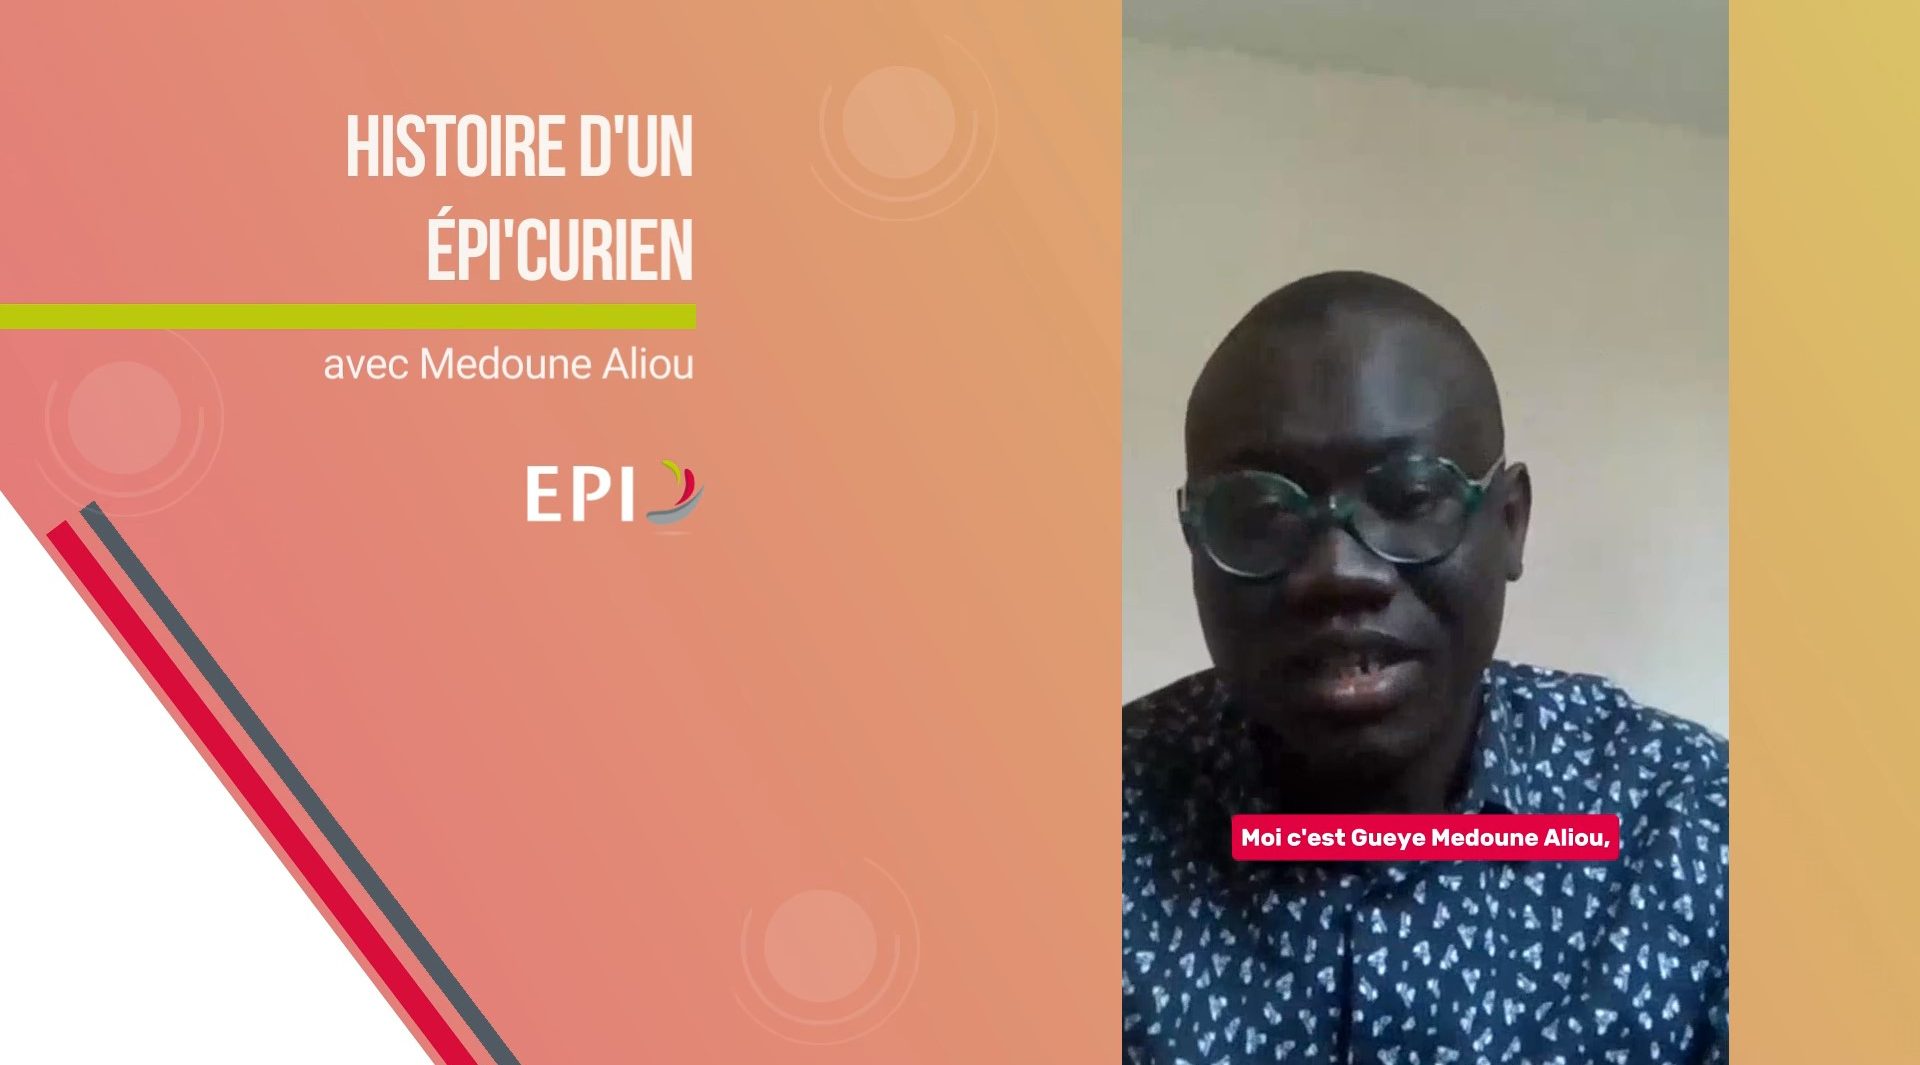 You are currently viewing Histoire d’un EPI’curien : épisode 5 avec Medoune Aliou